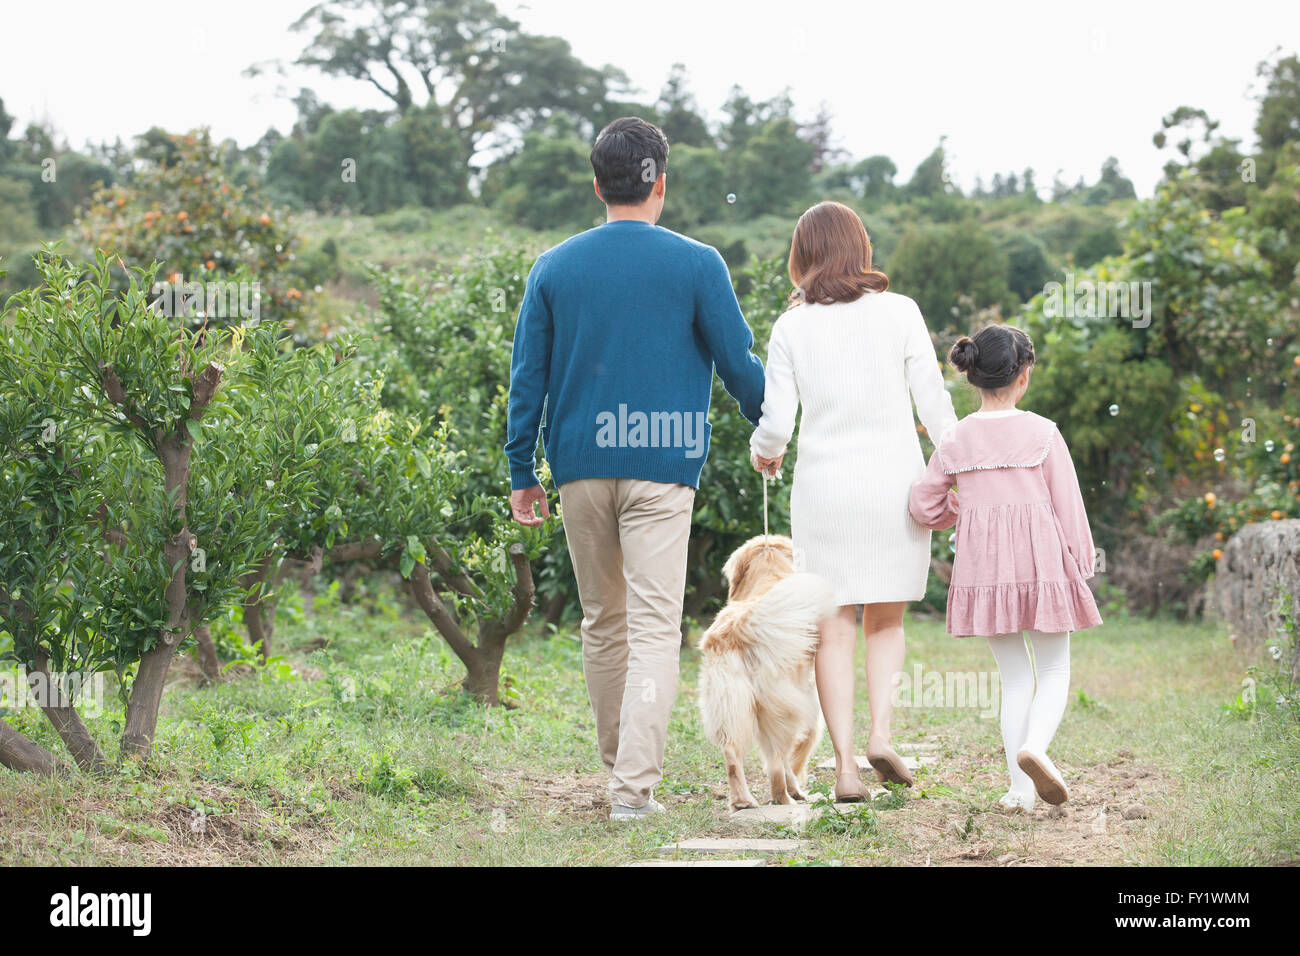 Darstellung der Familie und einem Hund zusammen spazieren auf der Werft Mandarine Nahfeld Vertretung Landleben zurück Stockfoto